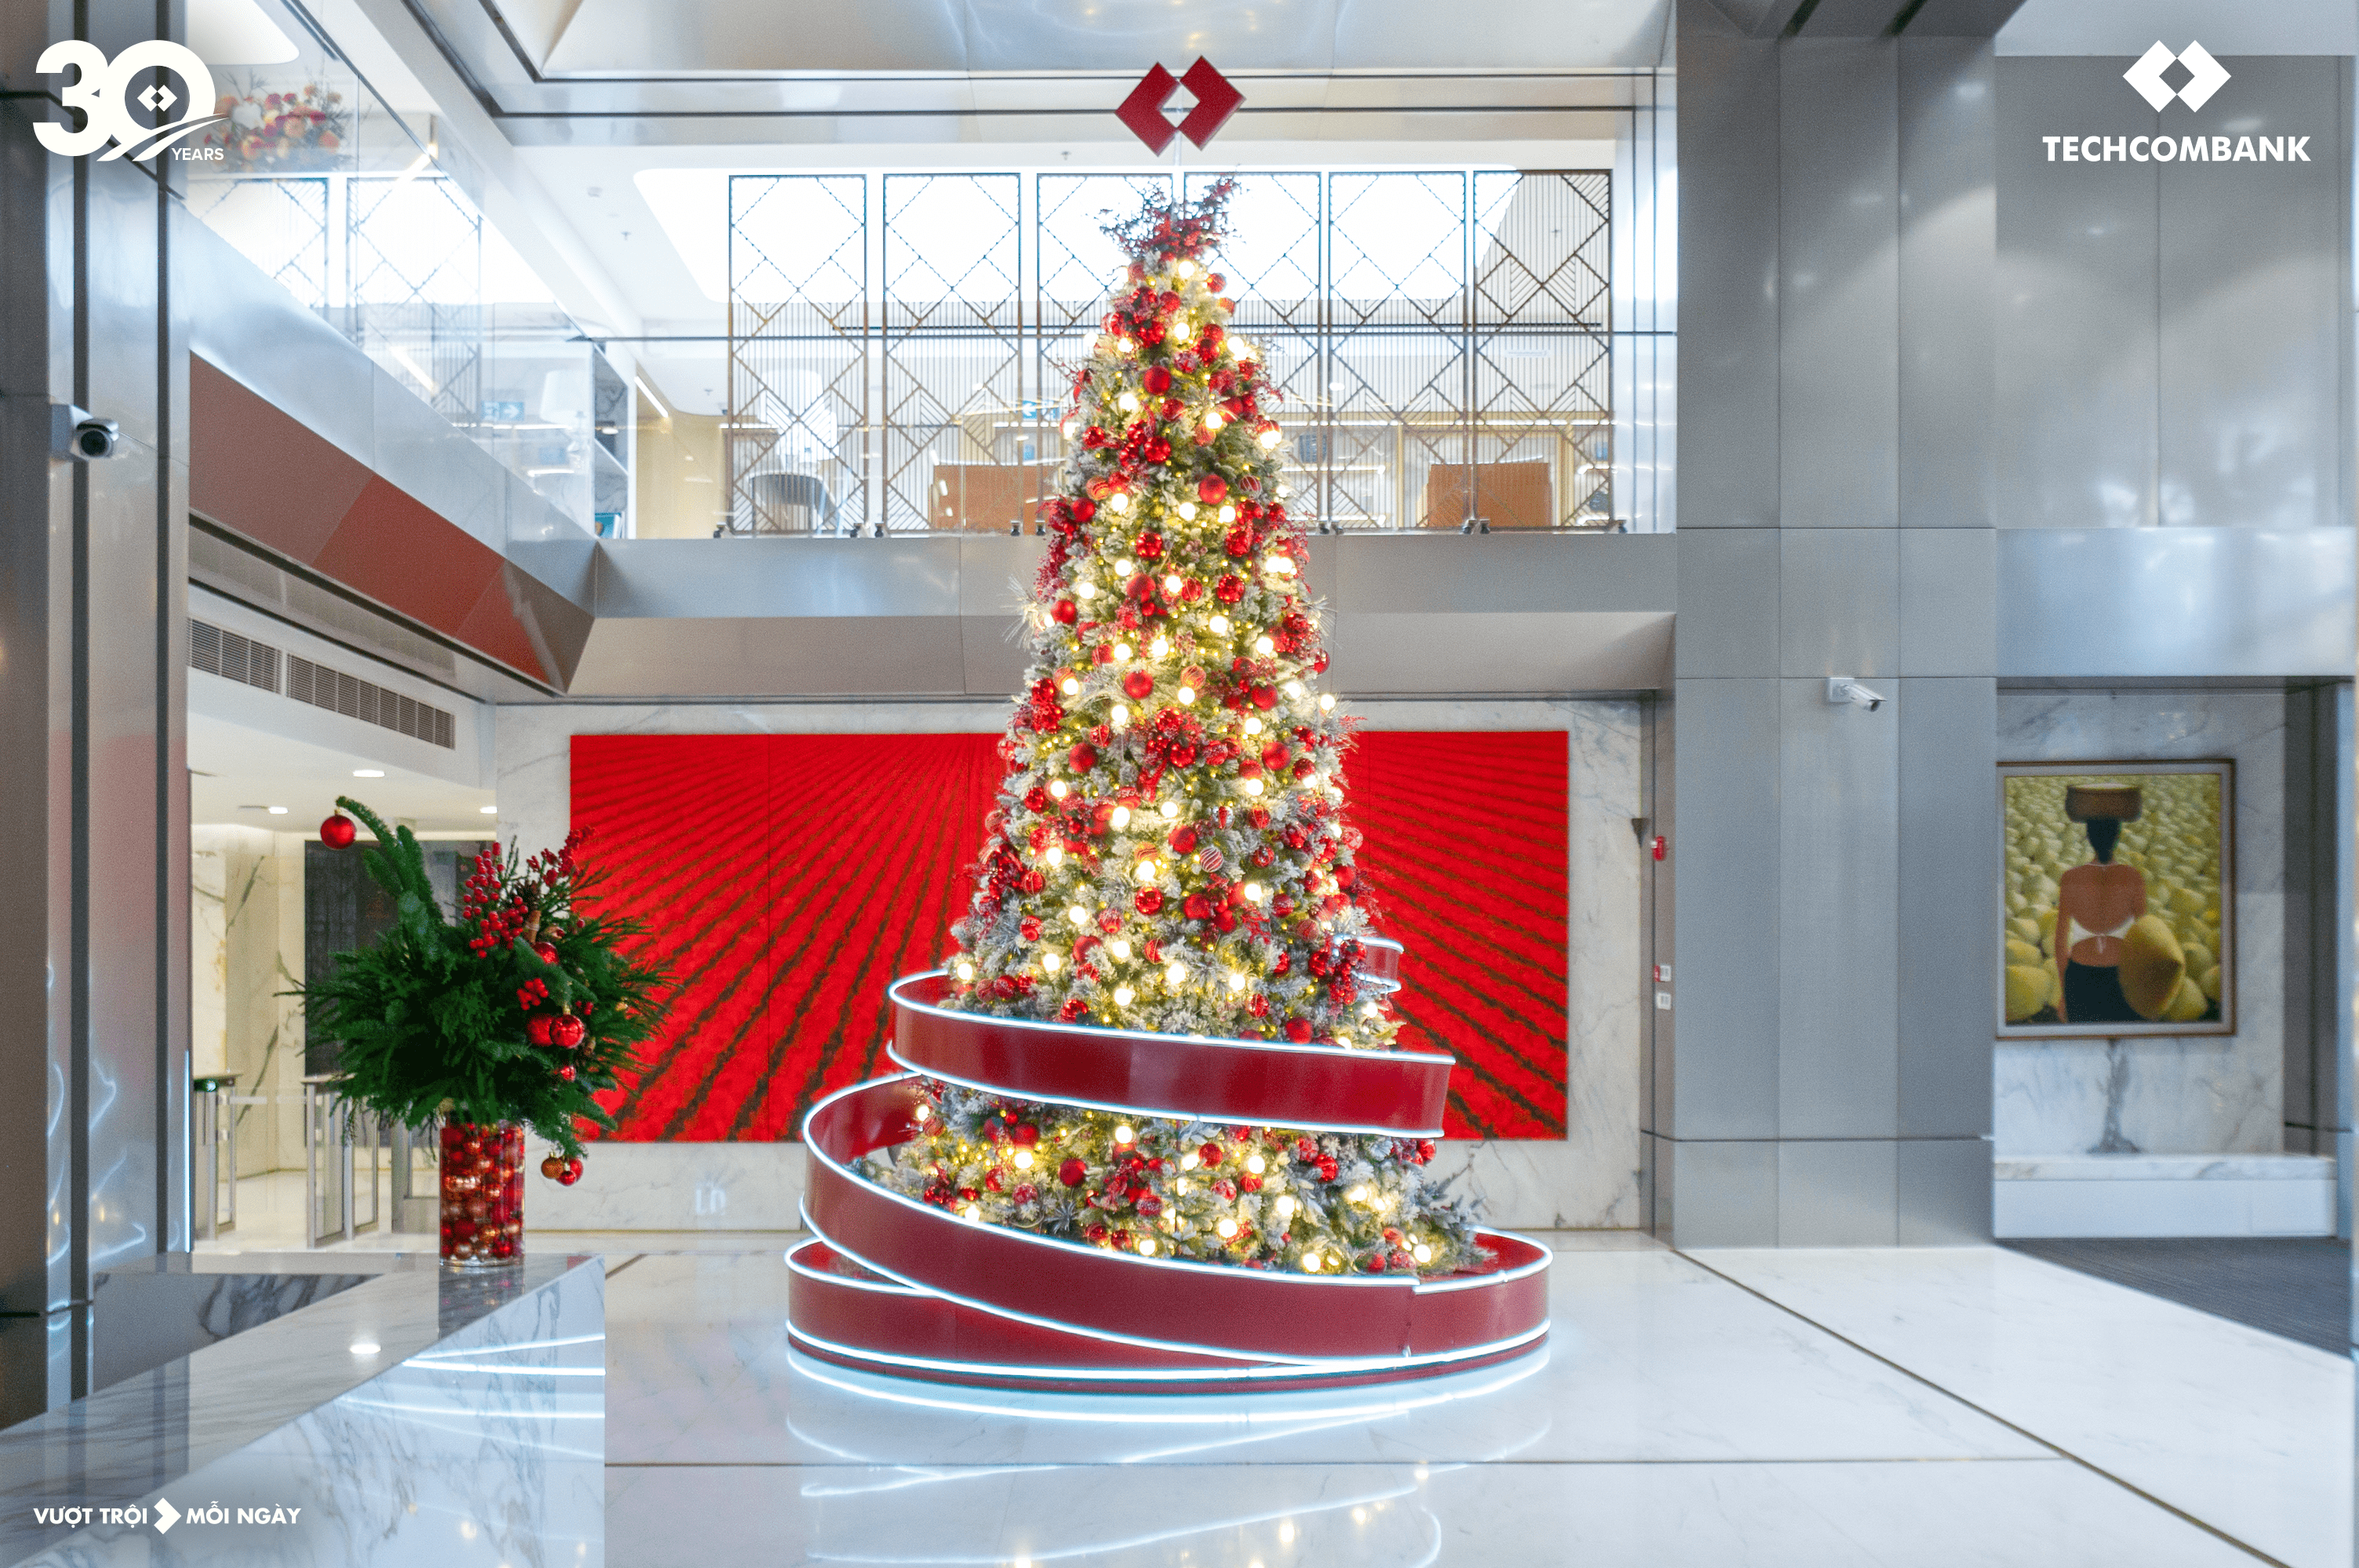 Những trang trí ấn tượng, tinh tế thay lời cầu chúc mừng một năm trọn vẹn, mùa Giáng sinh an lành trước thềm năm mới được cộng đồng yêu thích tại hai tòa nhà Hội sở Techcombank tại Hà Nội và TP HCM.